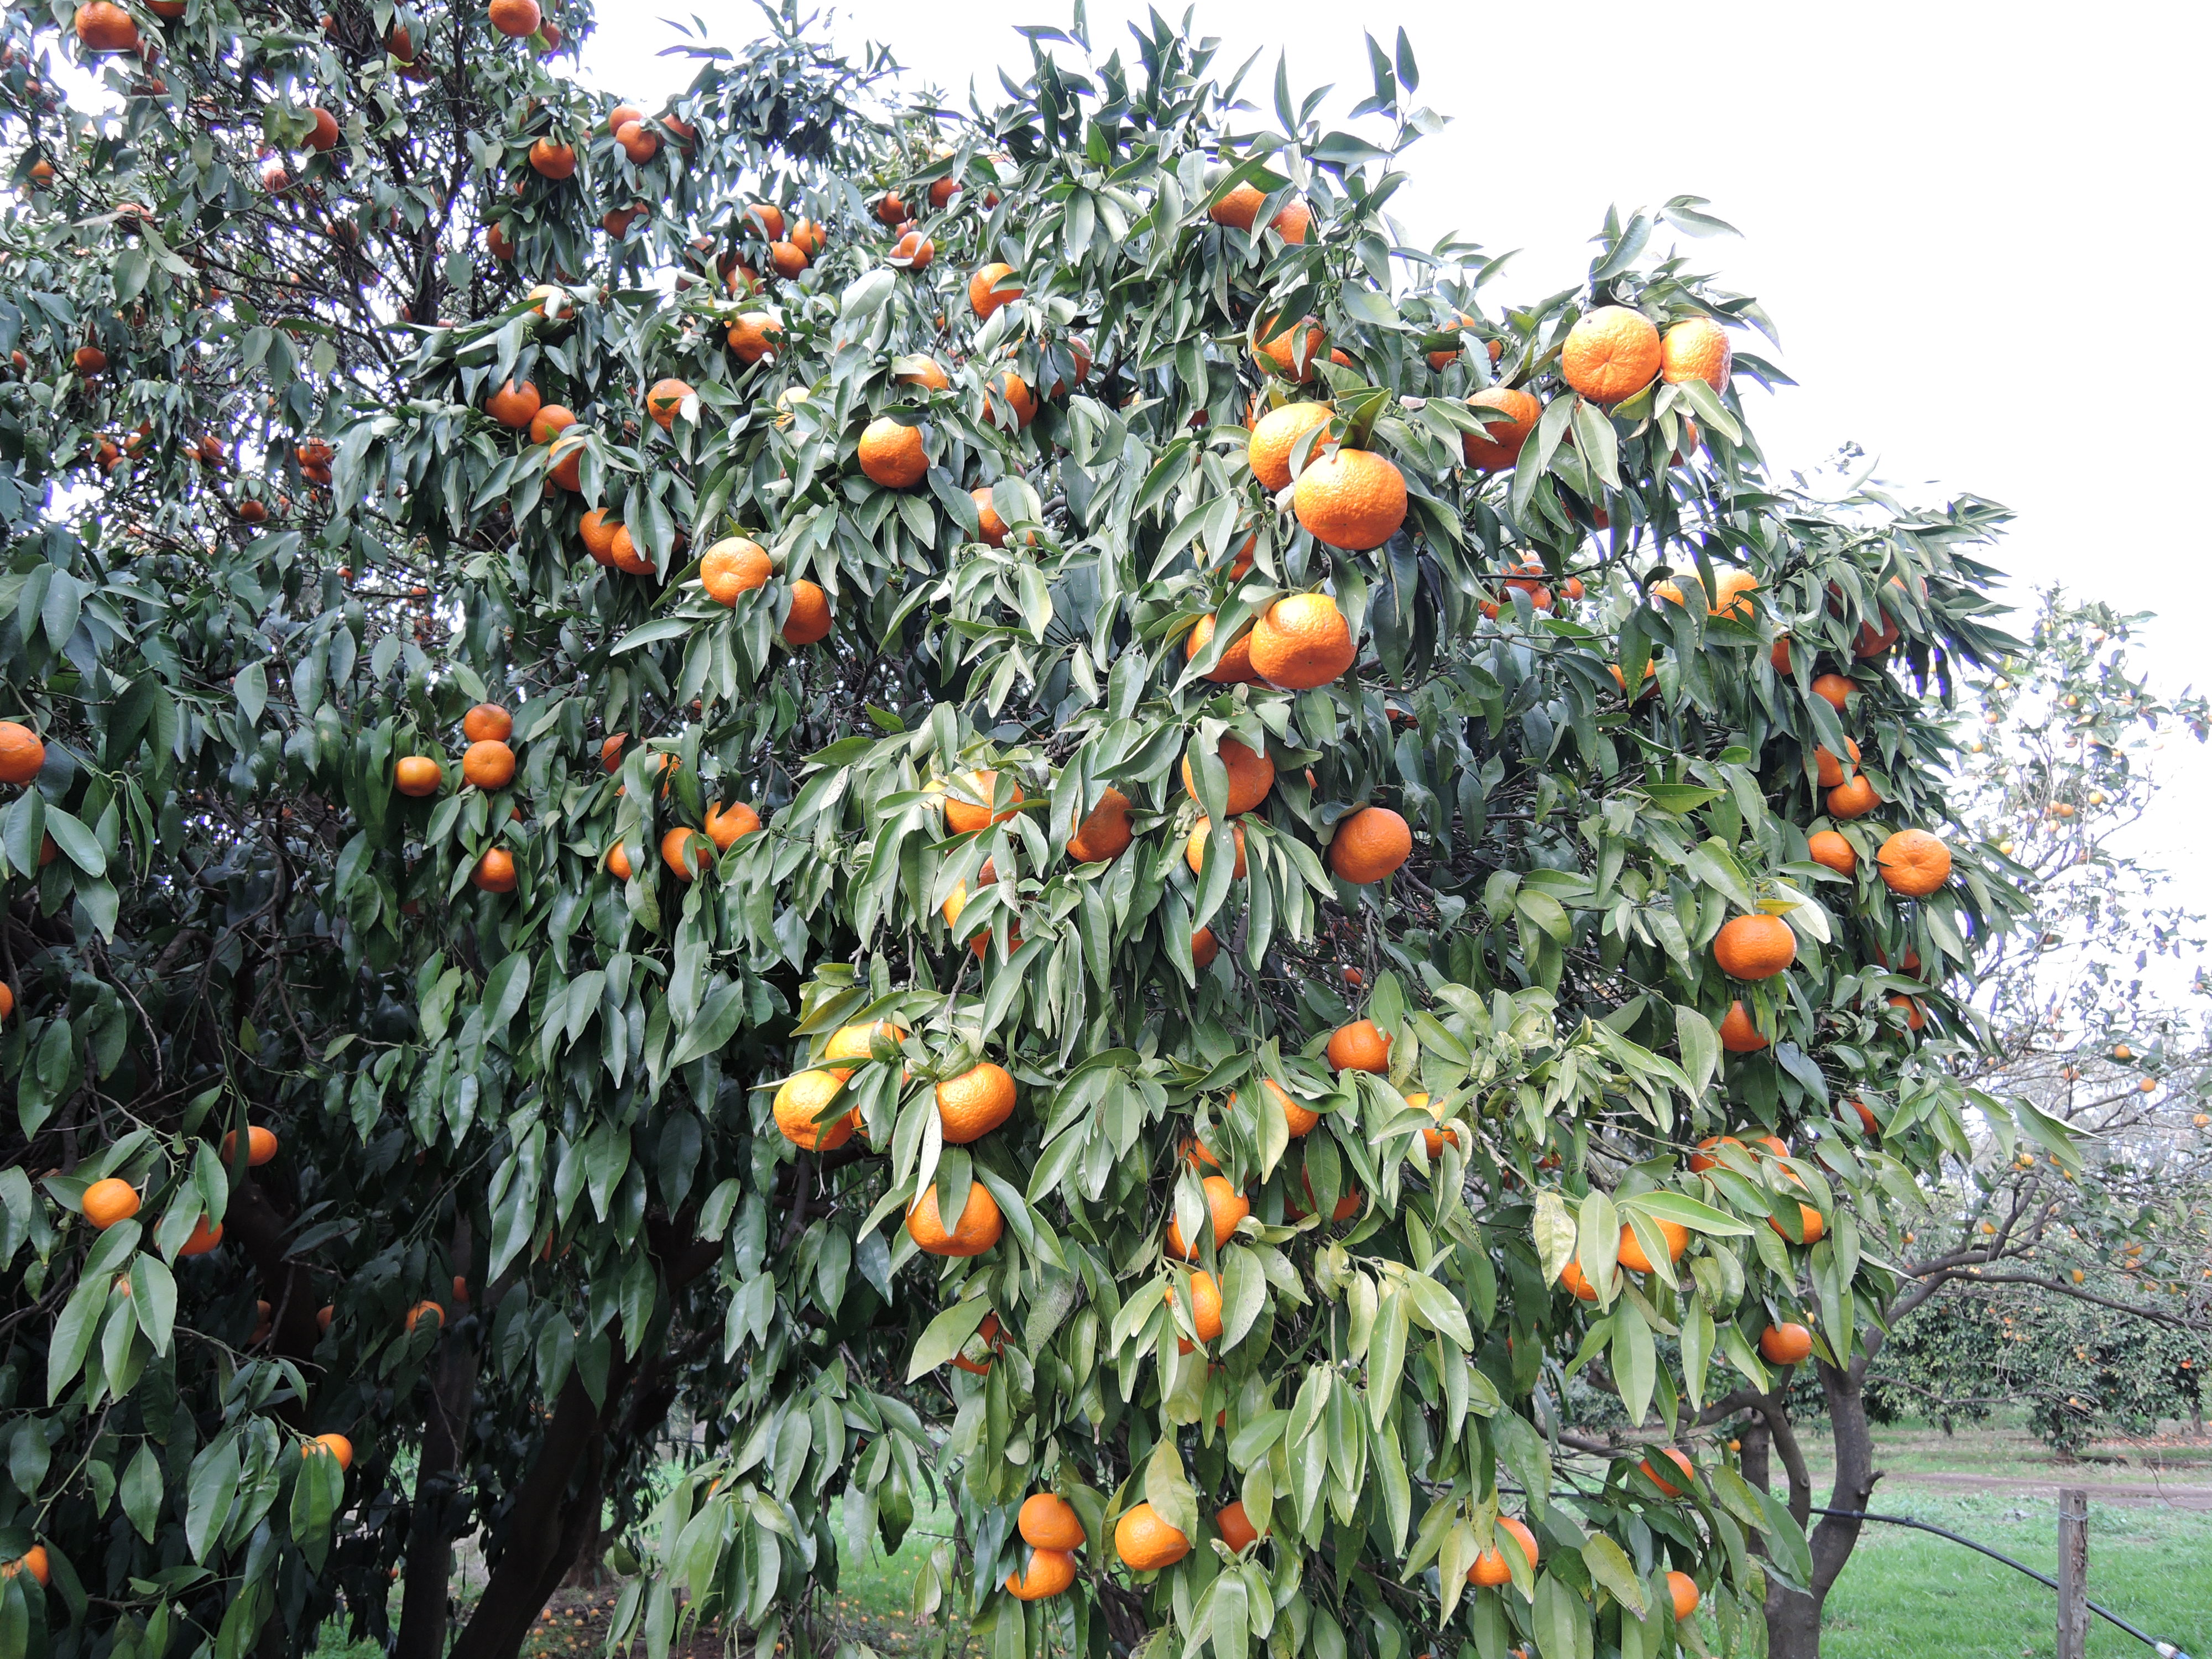 Surfacer oranger et citronnier au printemps